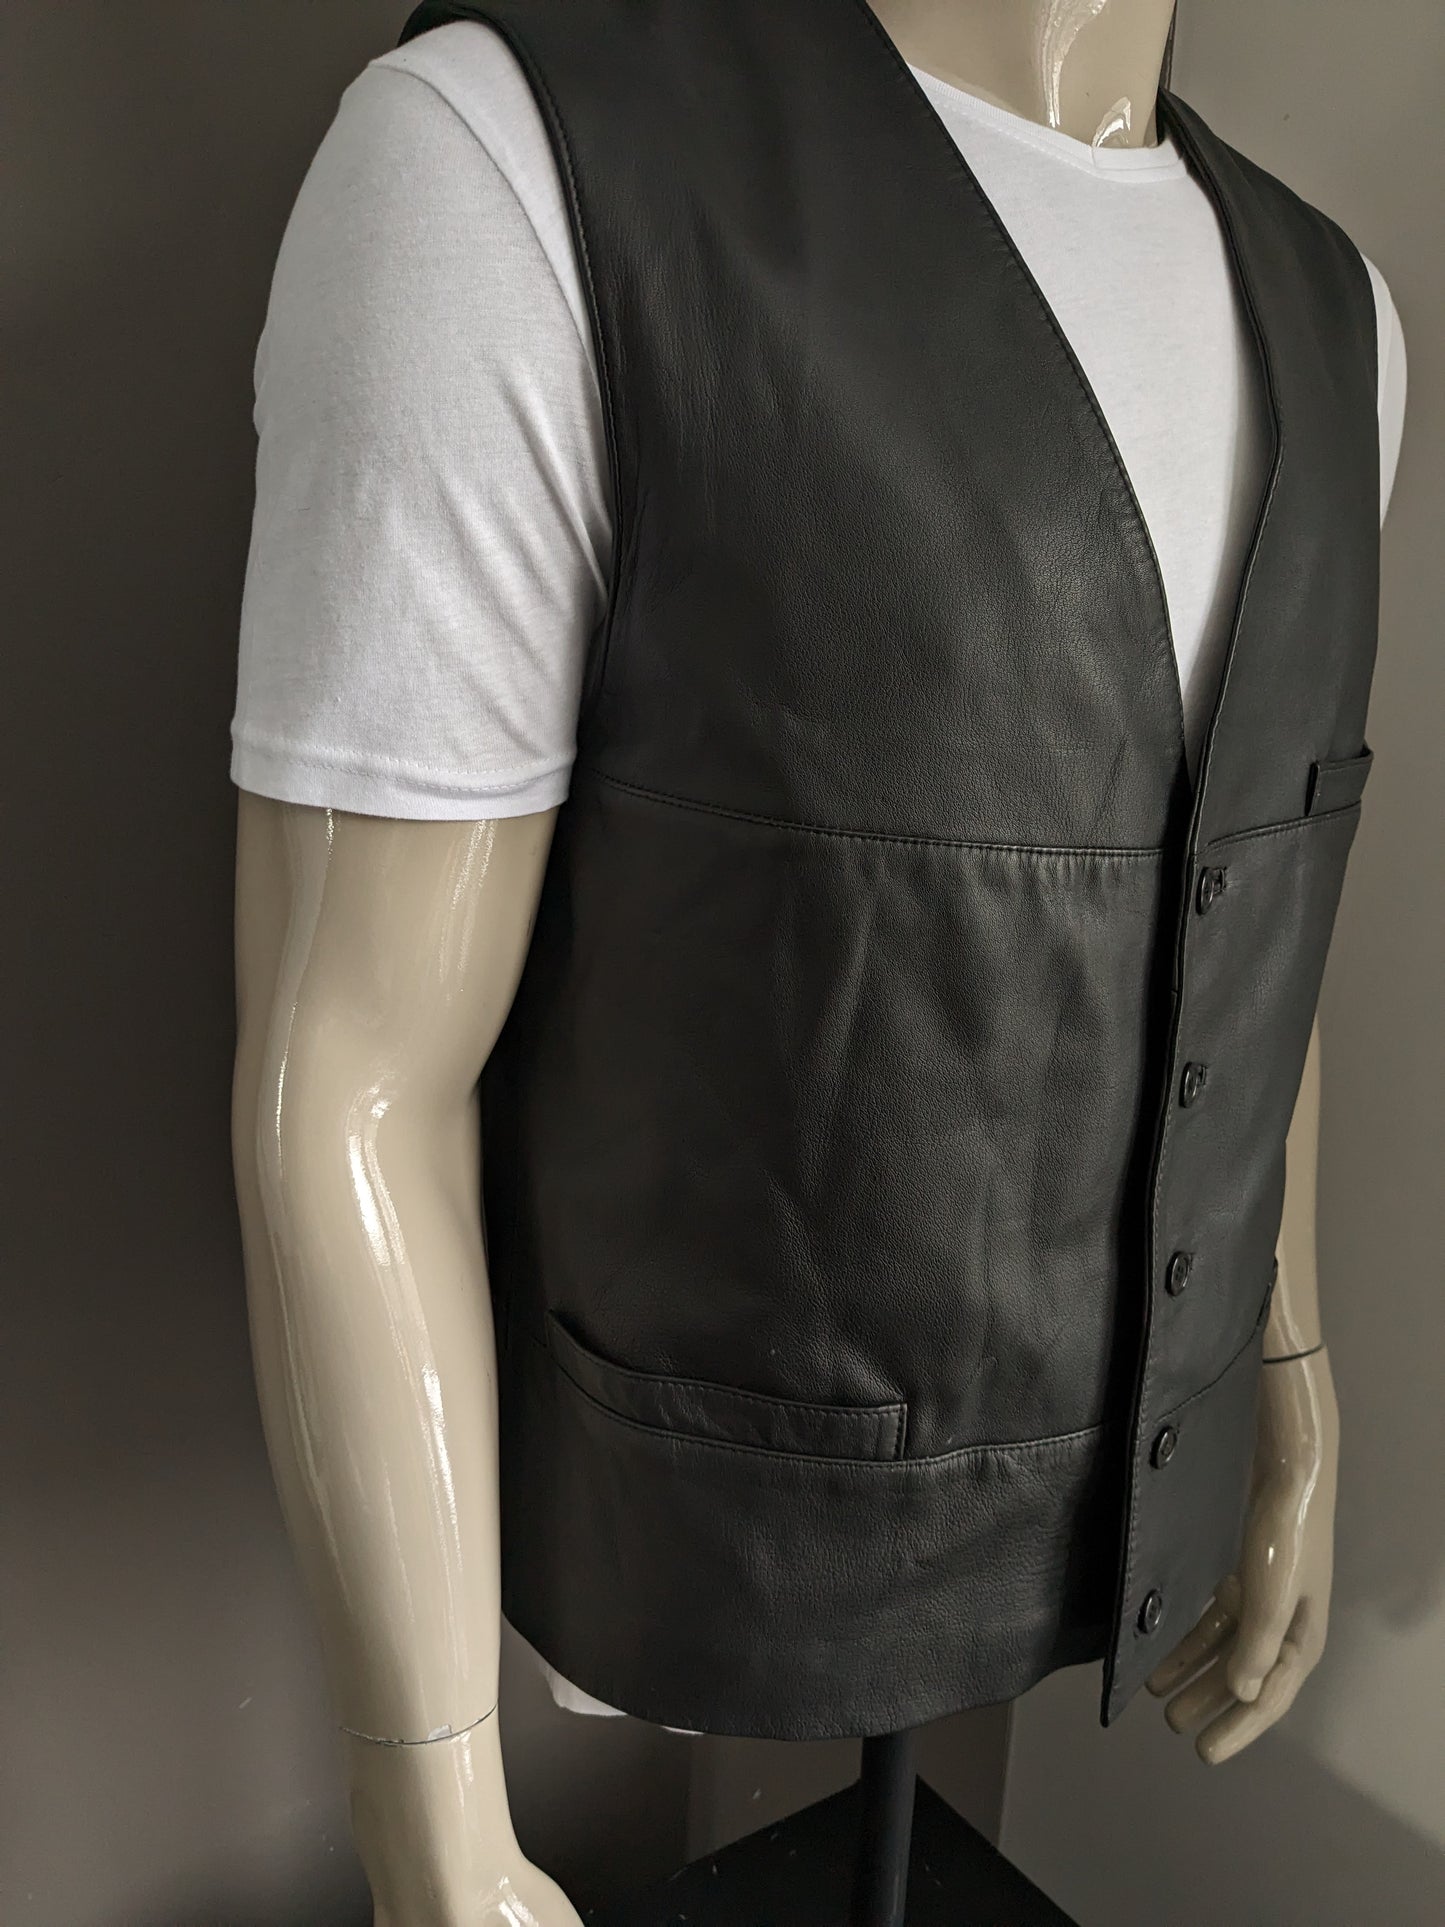 Chaleco de cuero Striwa de doble lado con 2 bolsillos internos. Negro. Tamaño L. #319